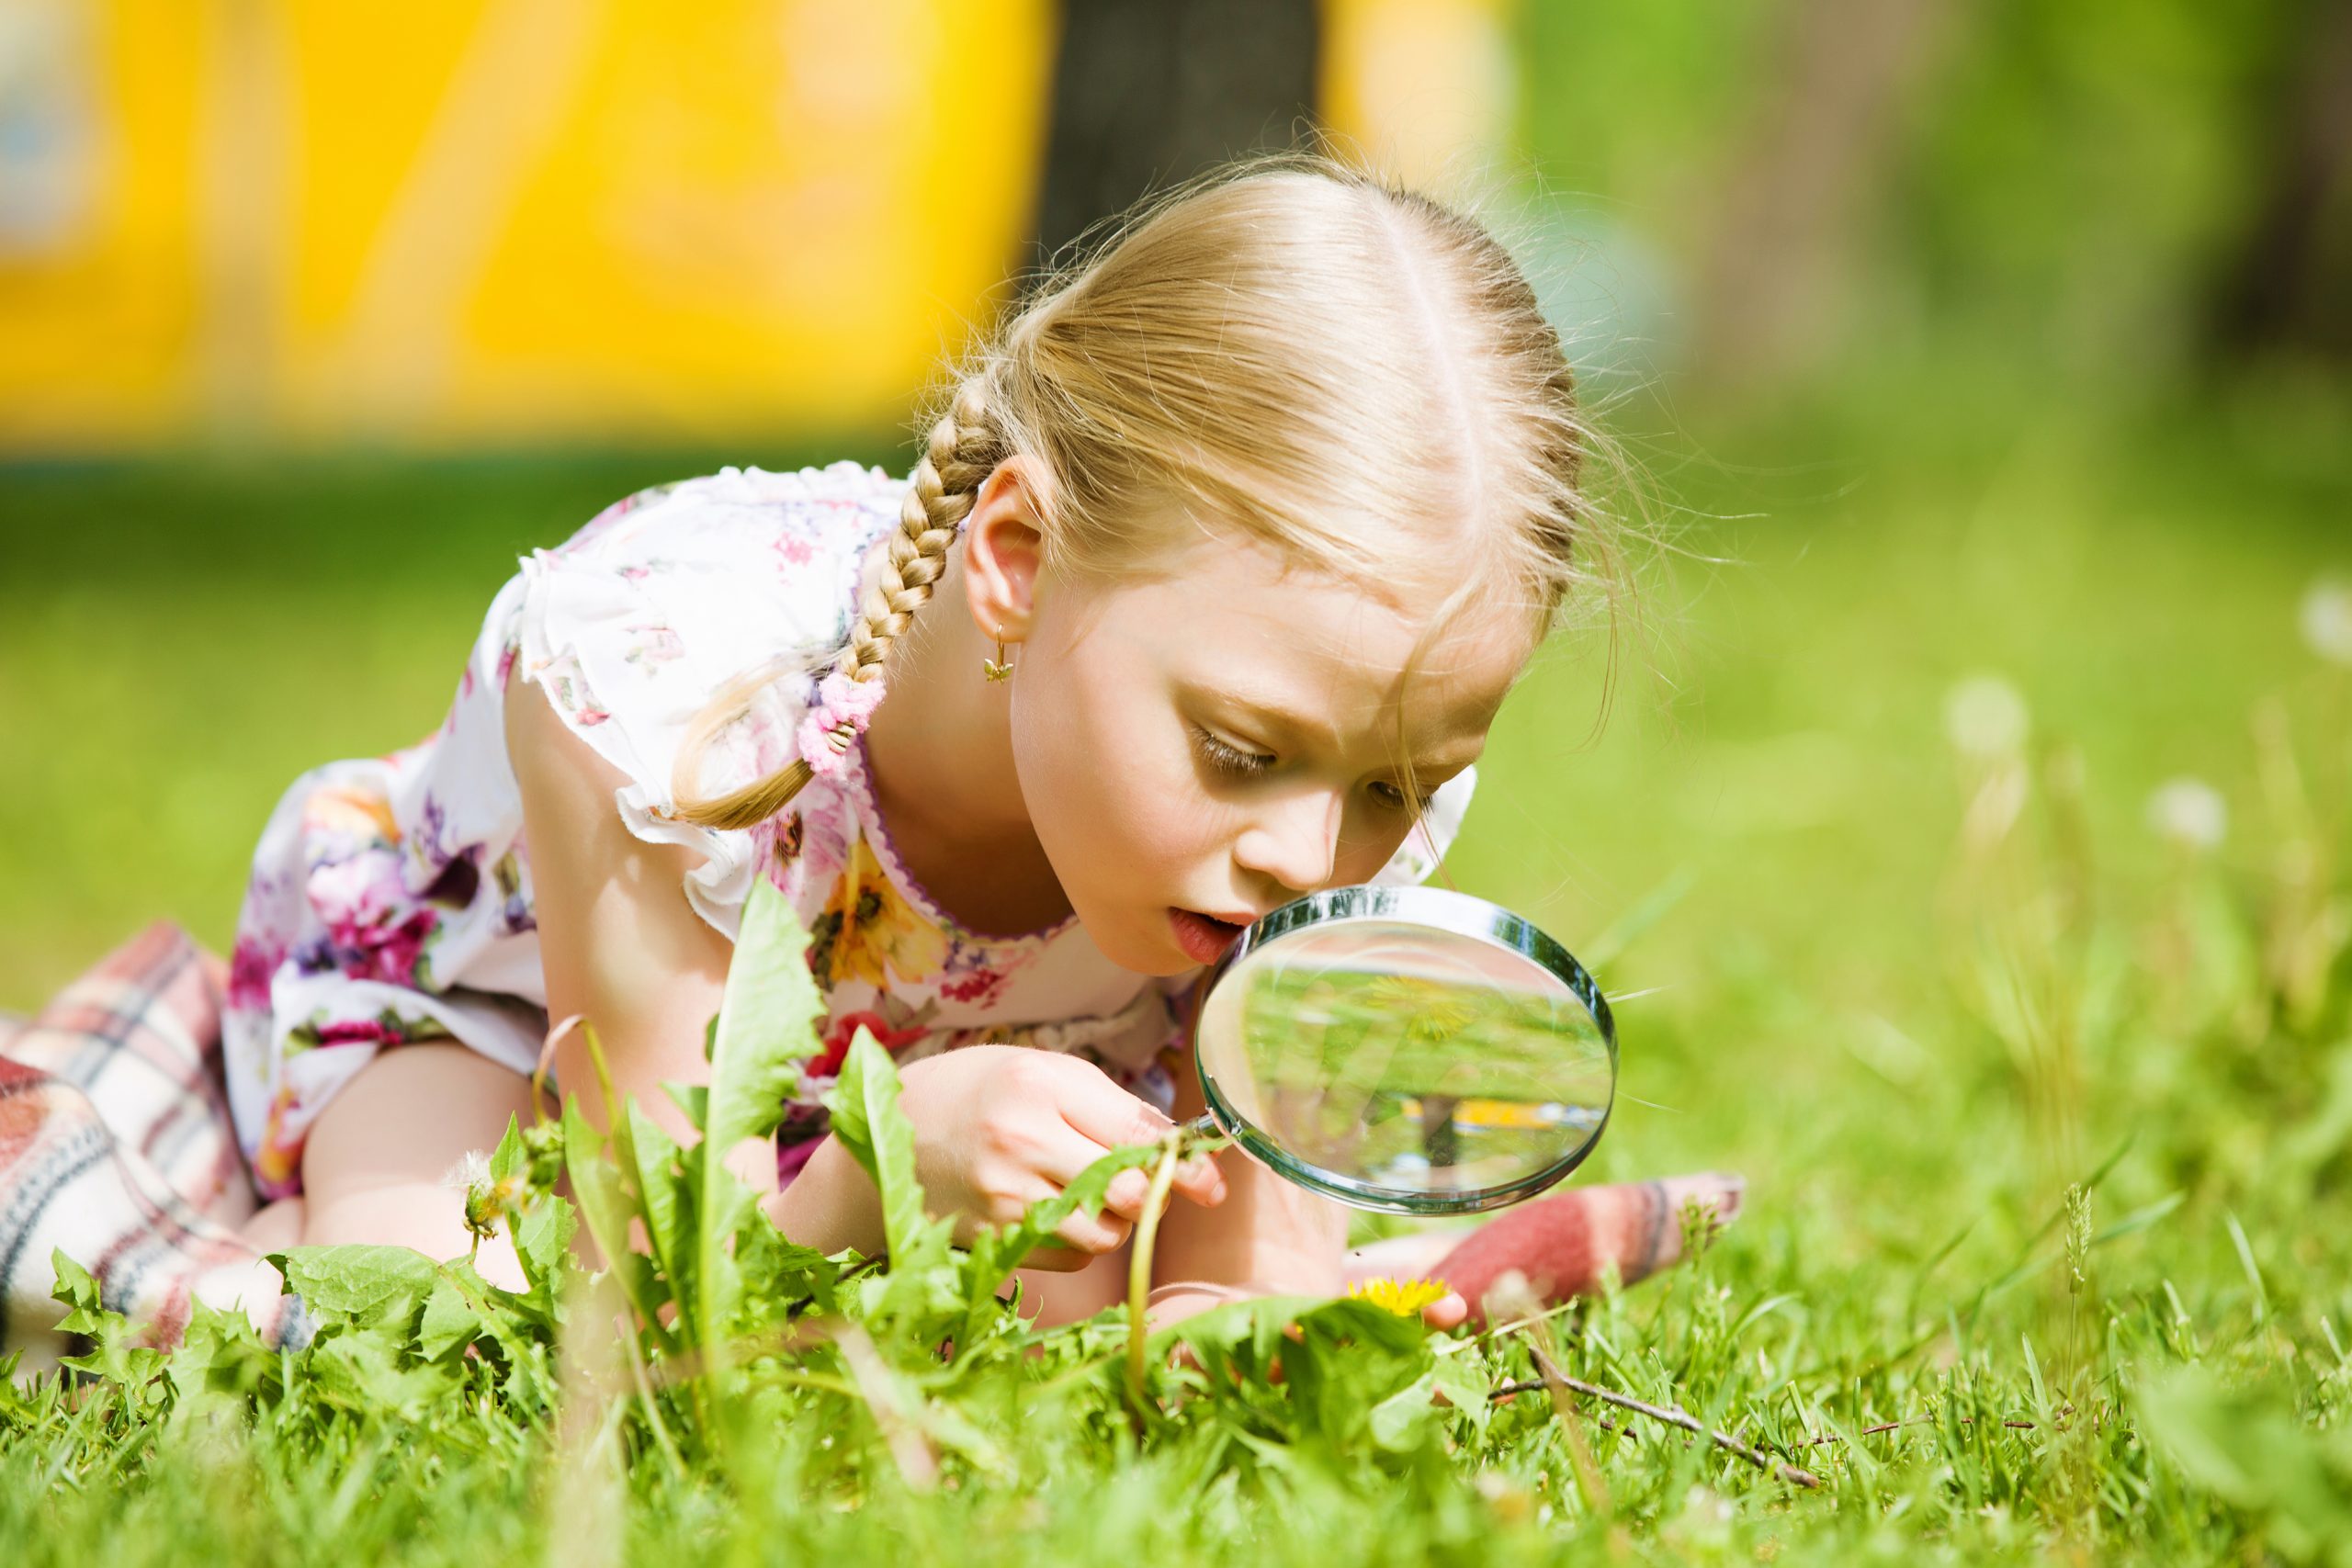 Интерес к познанию. Дети и природа. Девочка с лупой в траве. Любознательный ребенок. Изучение природы.